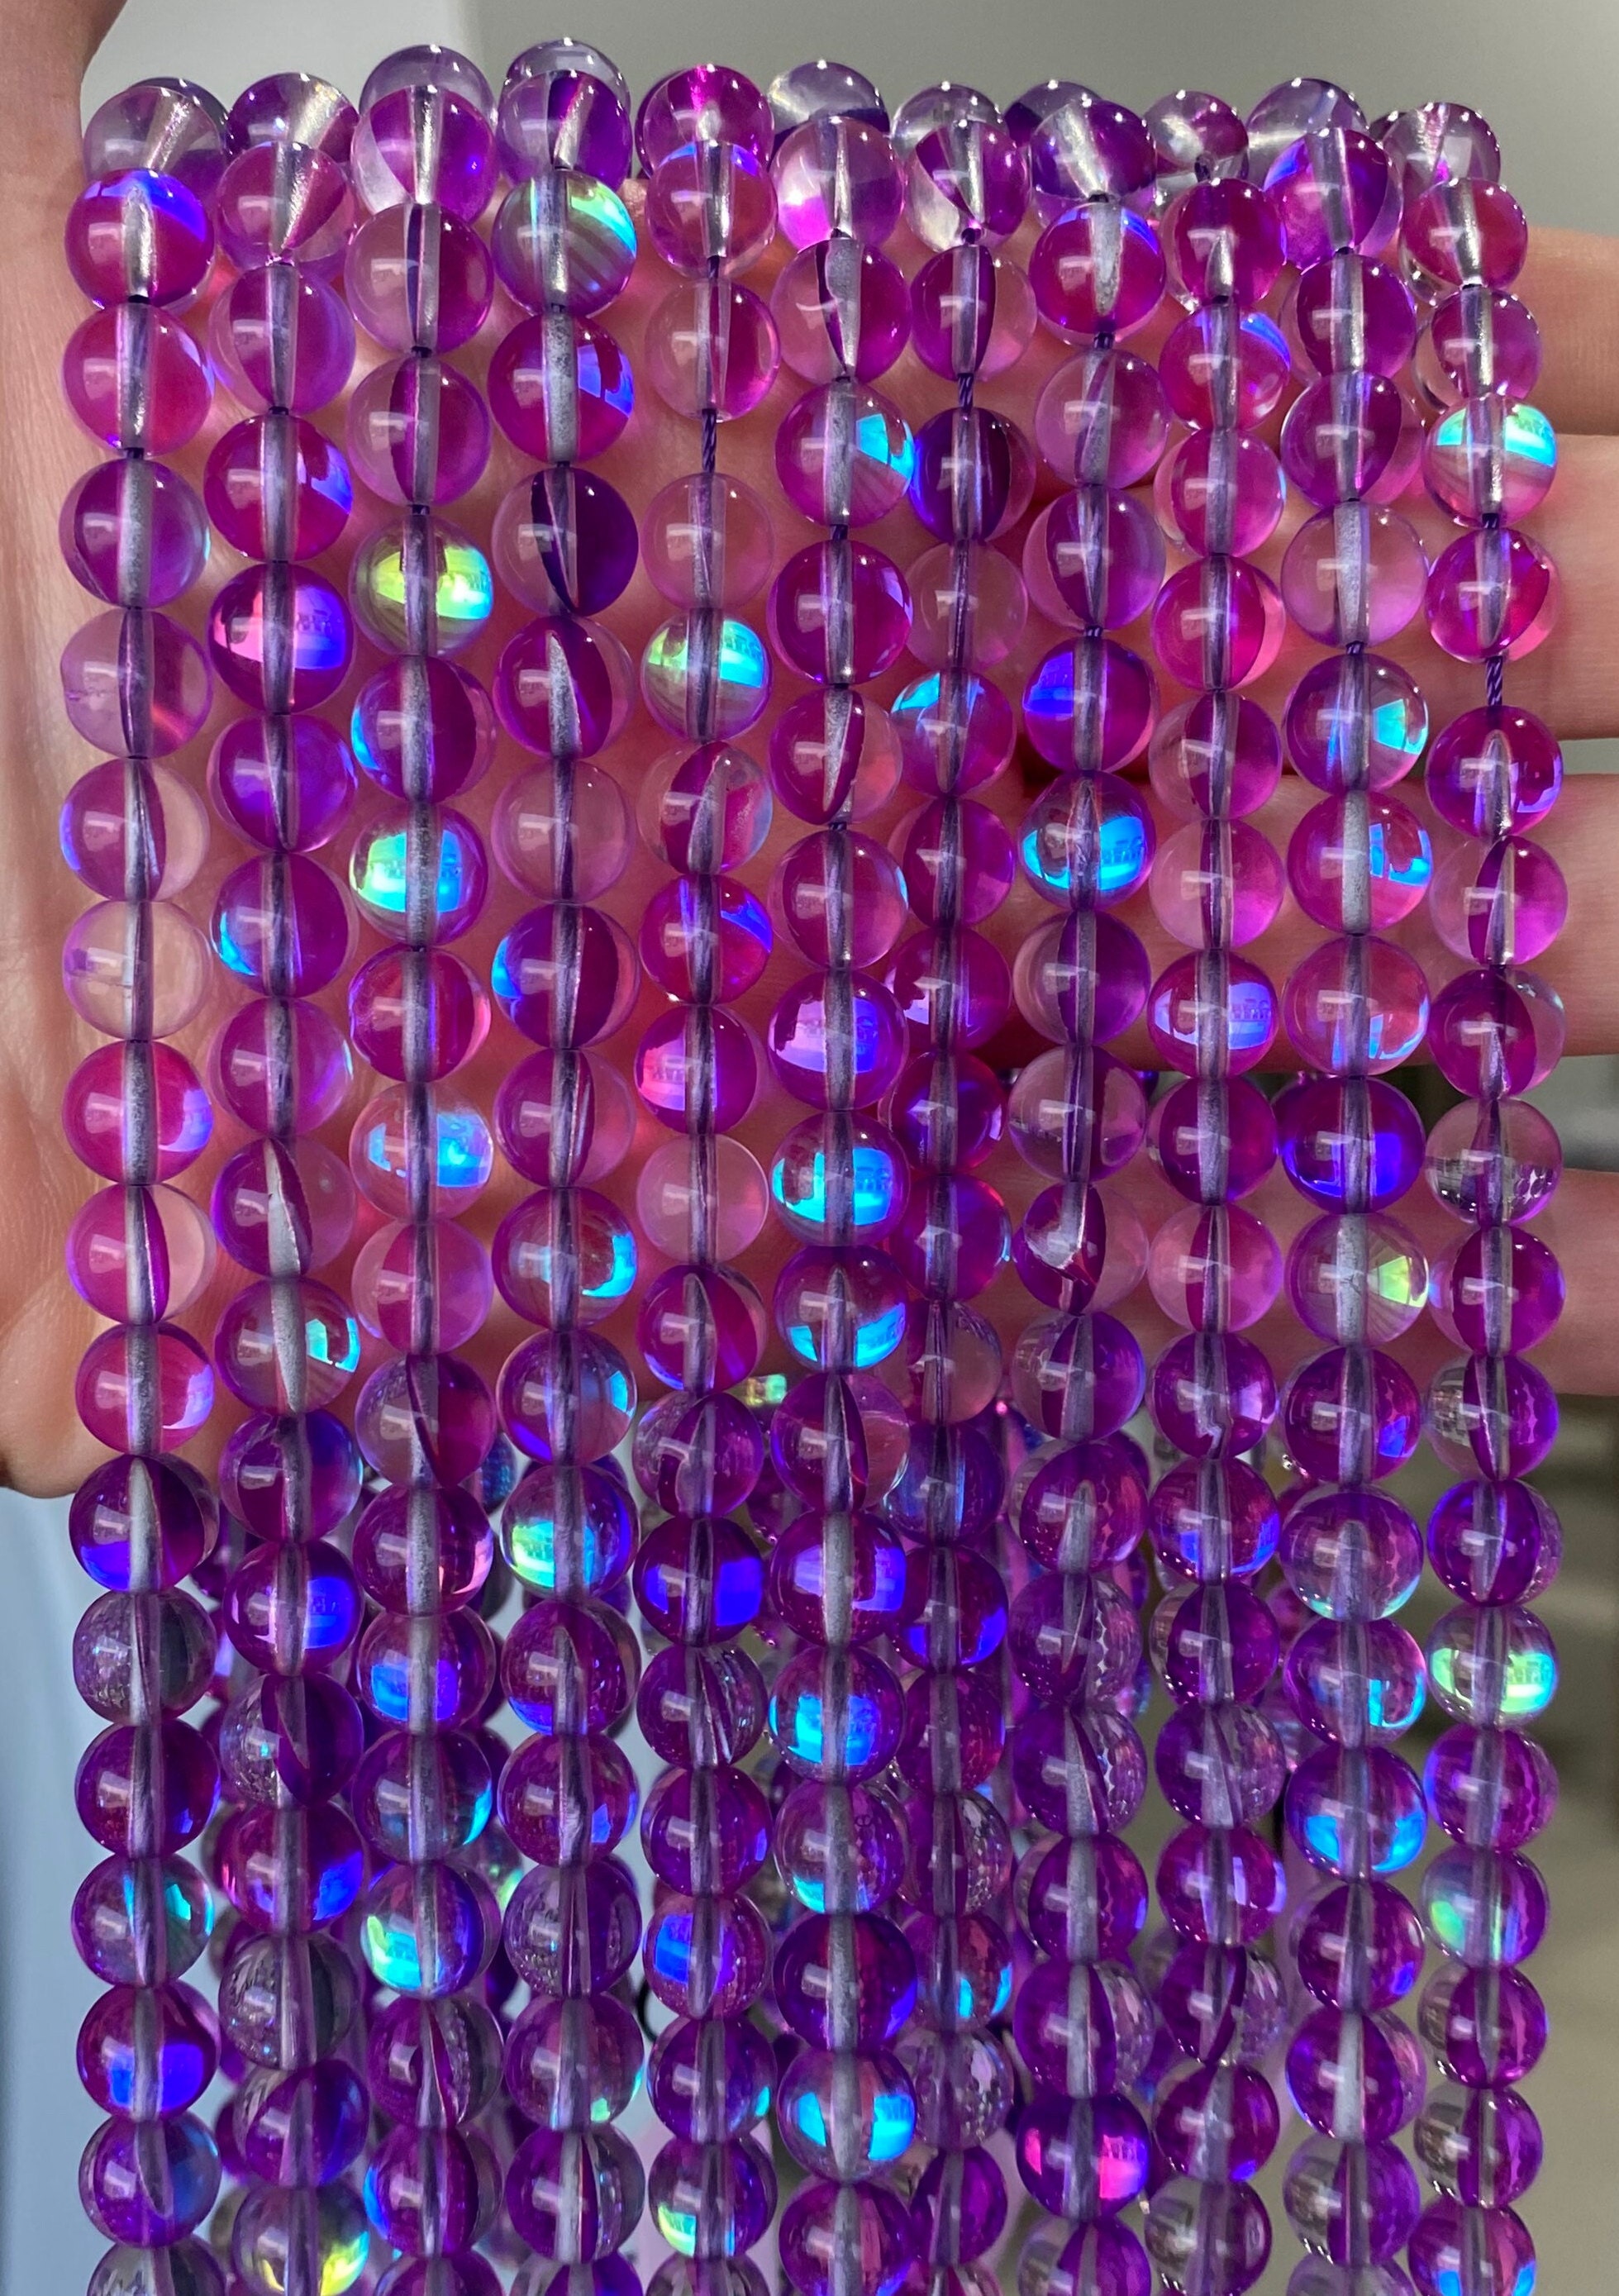 RINVEE Jewelry Making Kit for Girls 4-6 Mermaid Beads 8mm Cute Glass B –  WoodArtSupply